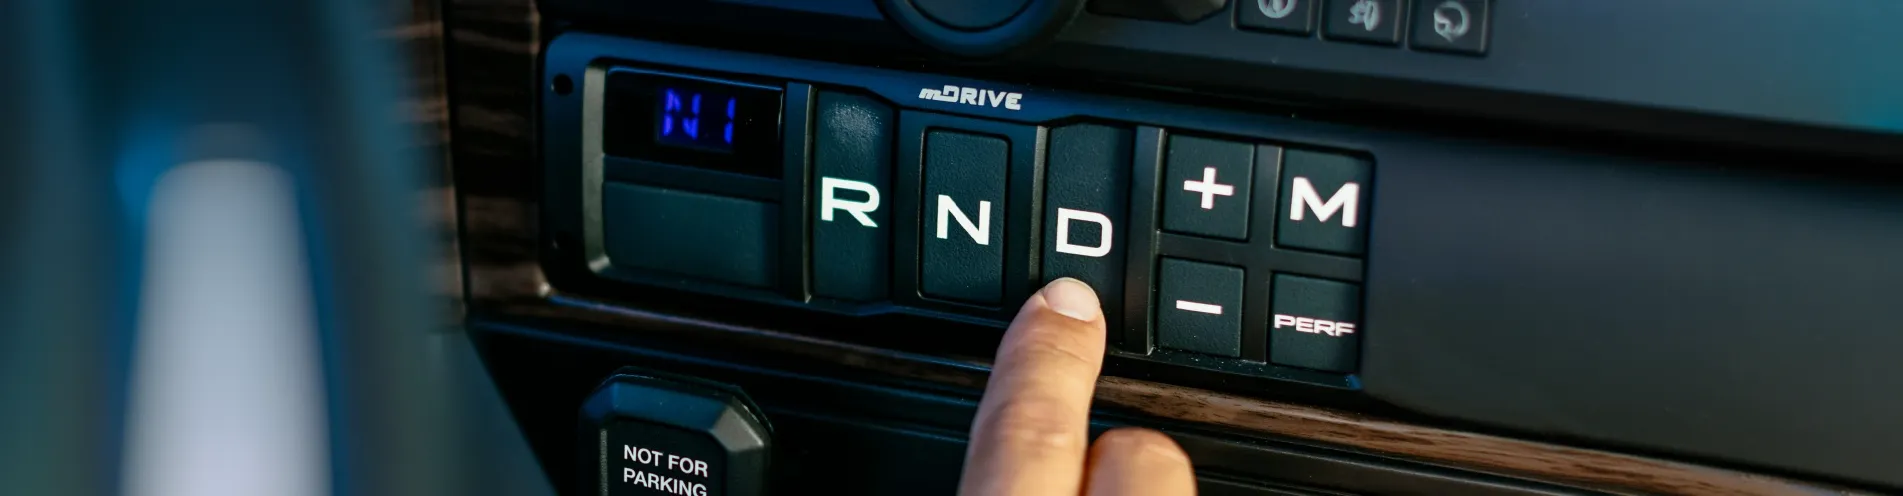 Botones de transmisión mDrive HD de un camión Mack